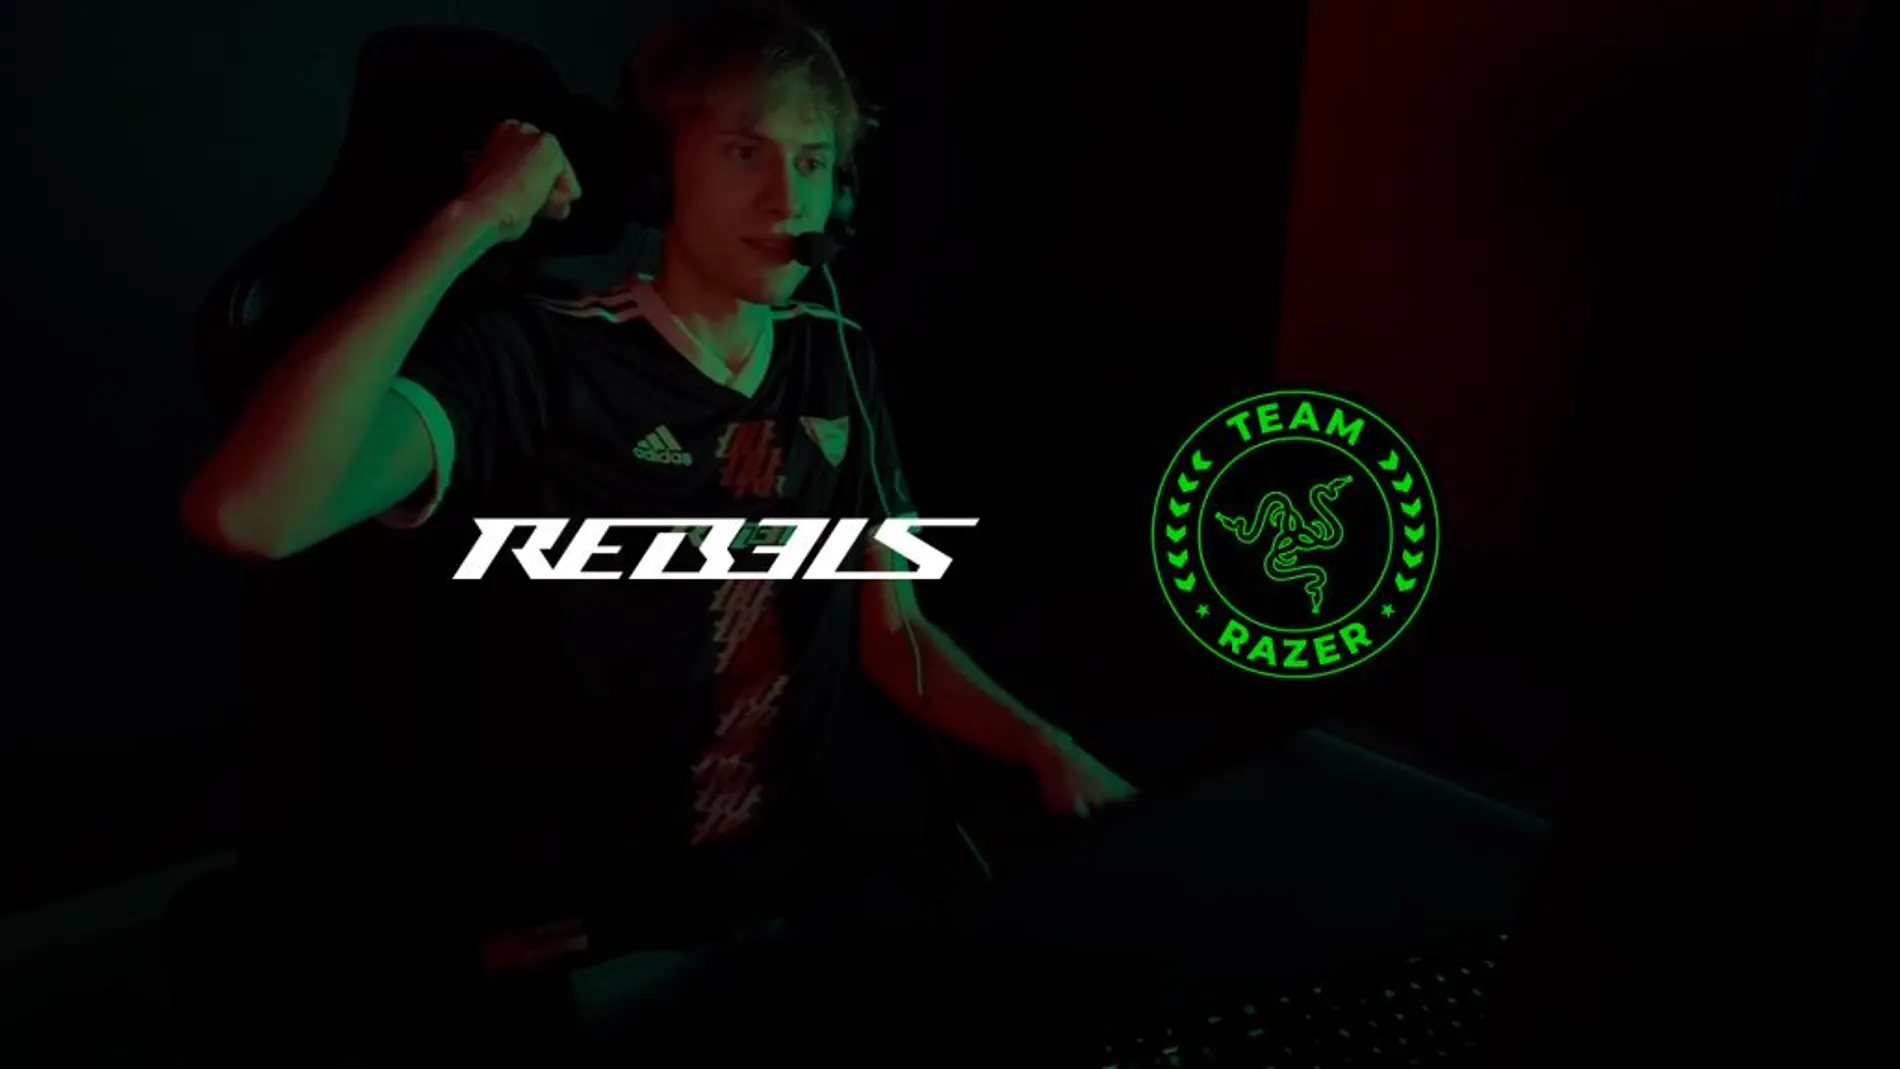 RAZER X Rebels Gaming